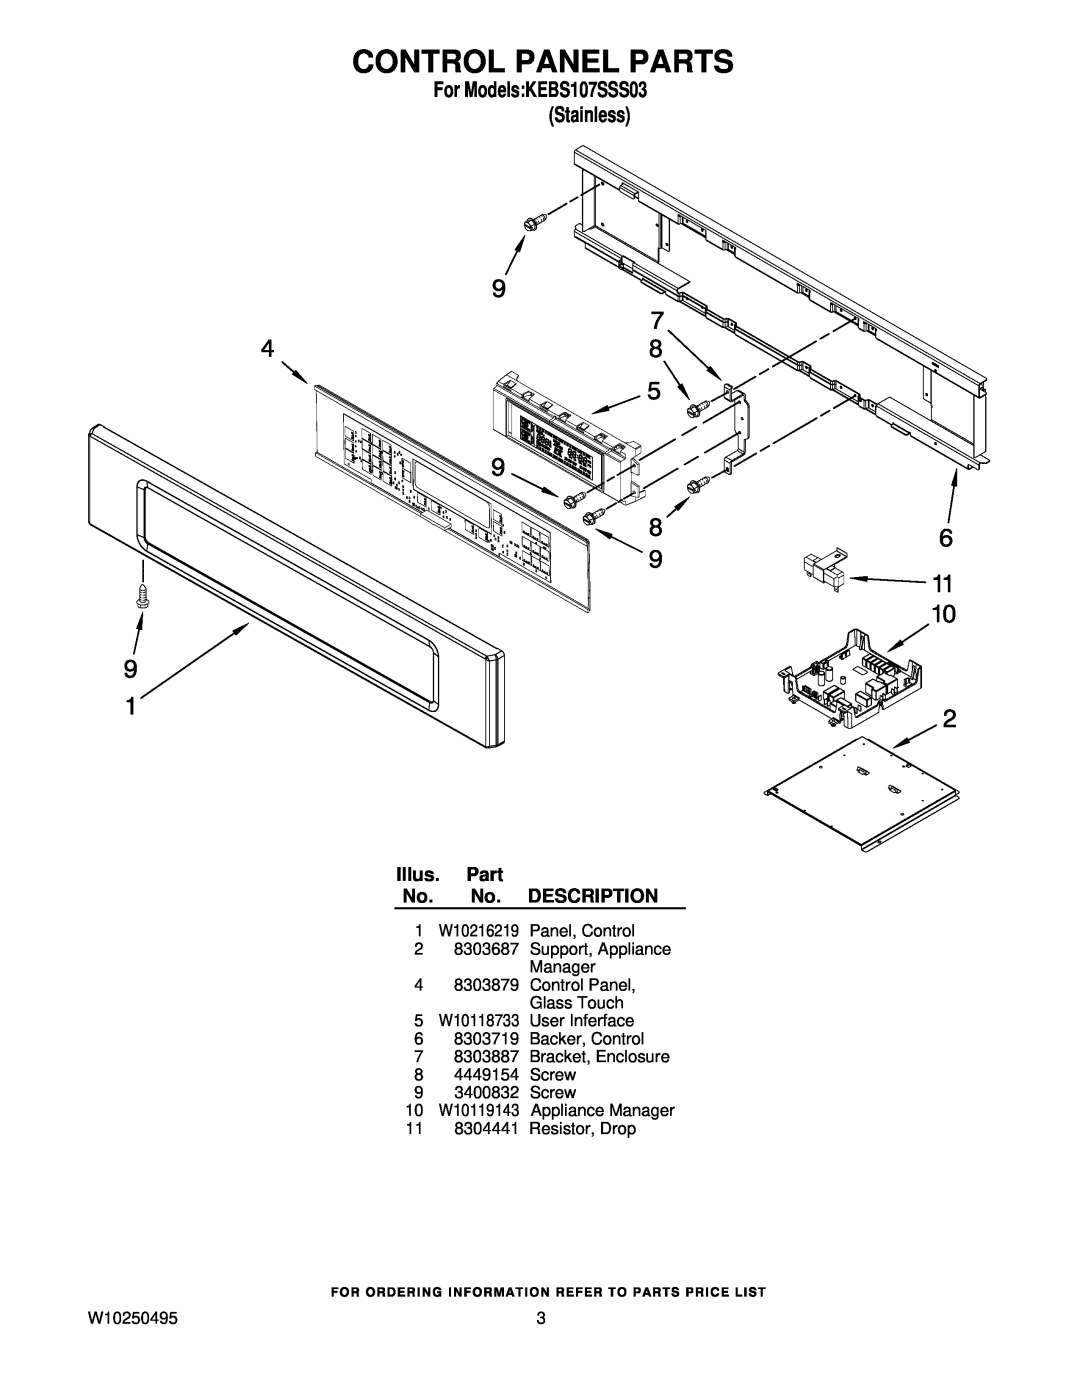 KitchenAid KEBS107SSS03 manual Control Panel Parts, Illus. Part No. No. DESCRIPTION, 11 8304441 Resistor, Drop, W10250495 